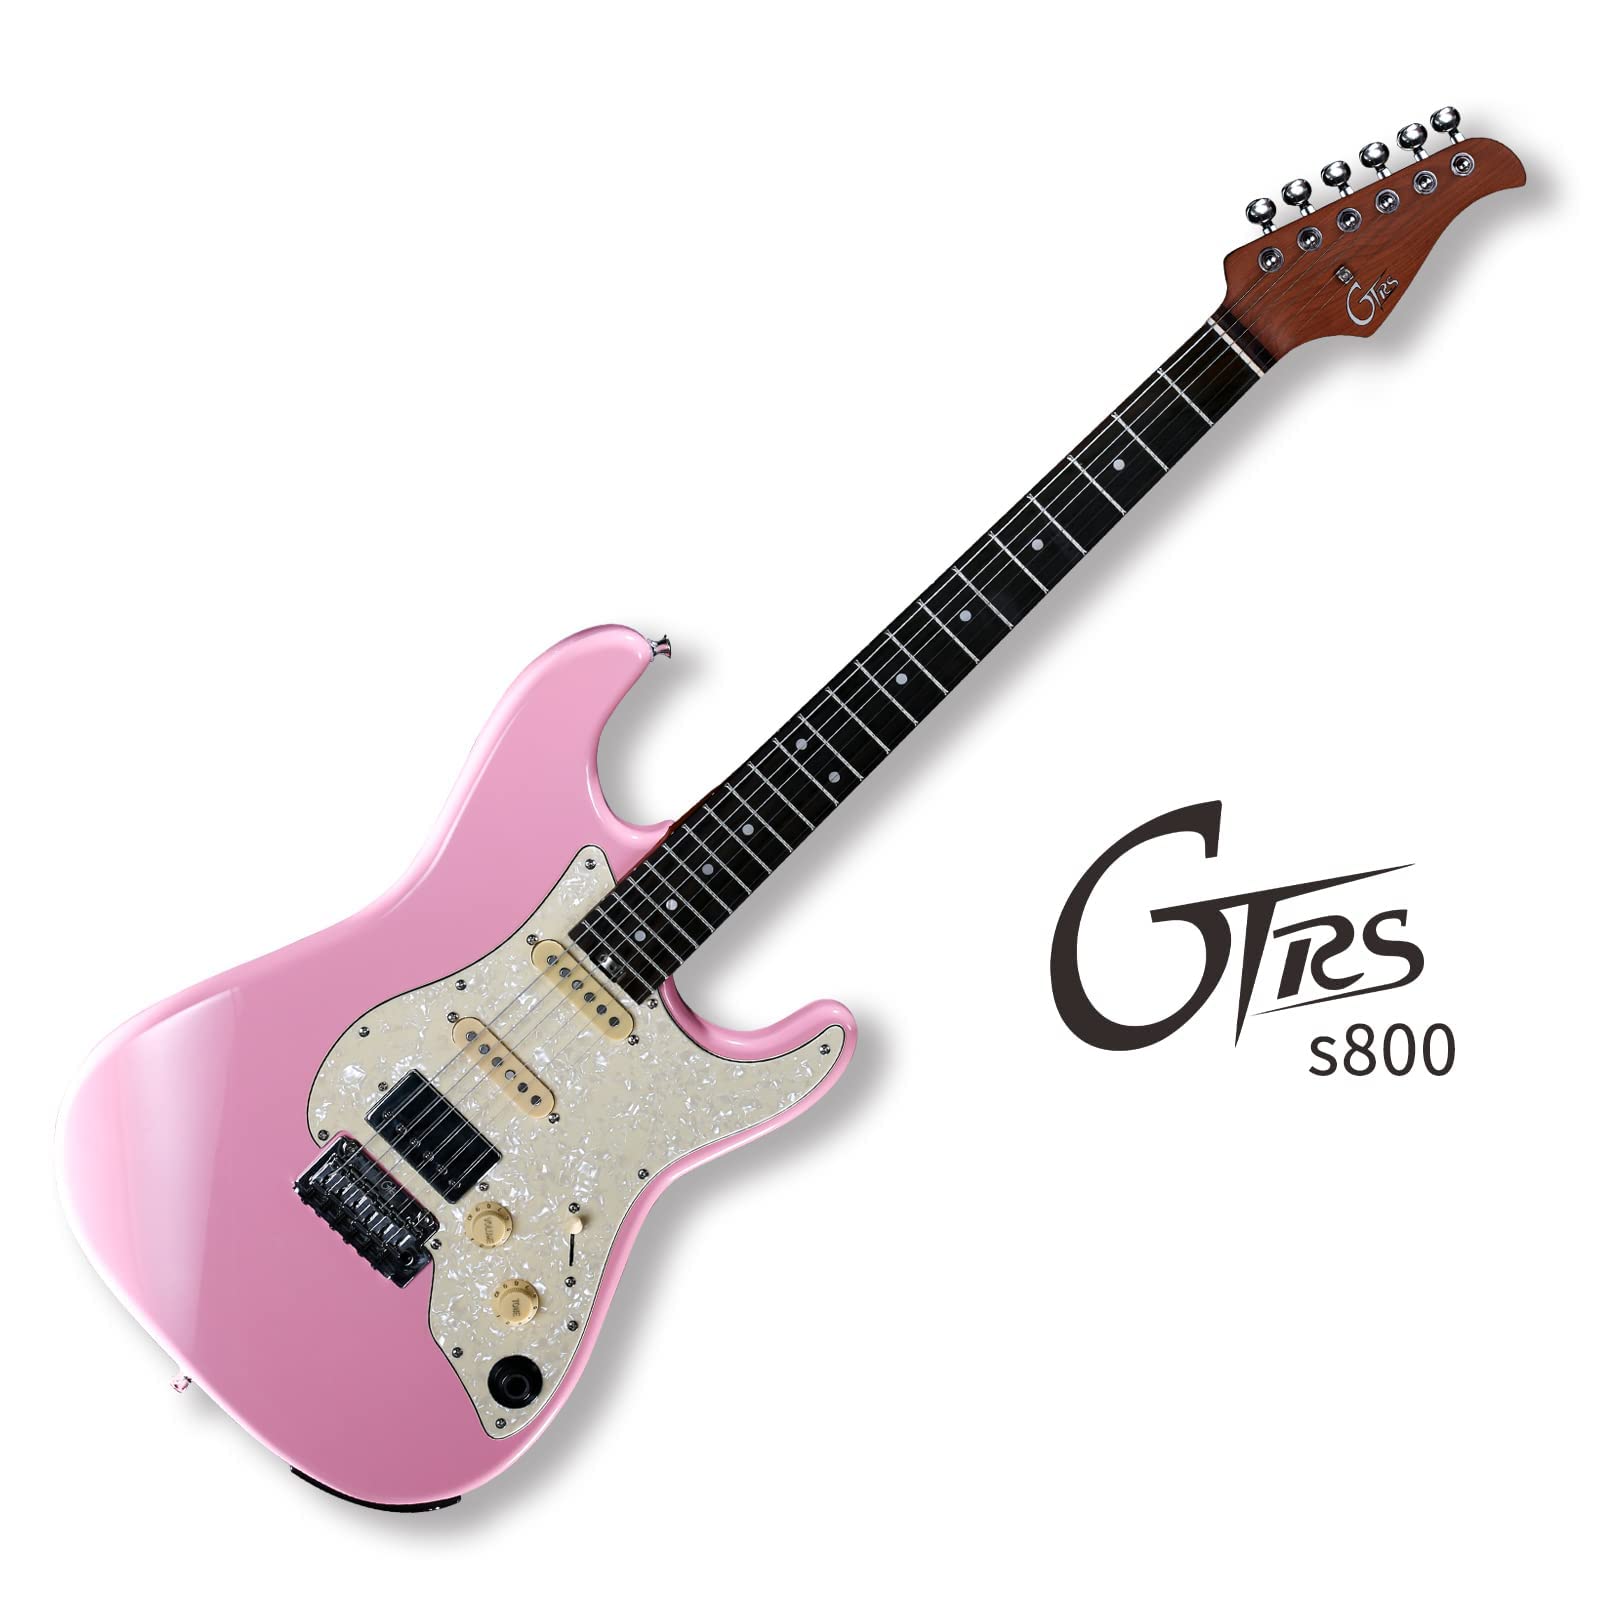 Đàn Guitar Điện Mooer GTRS S800 Shell Pink - Việt Music